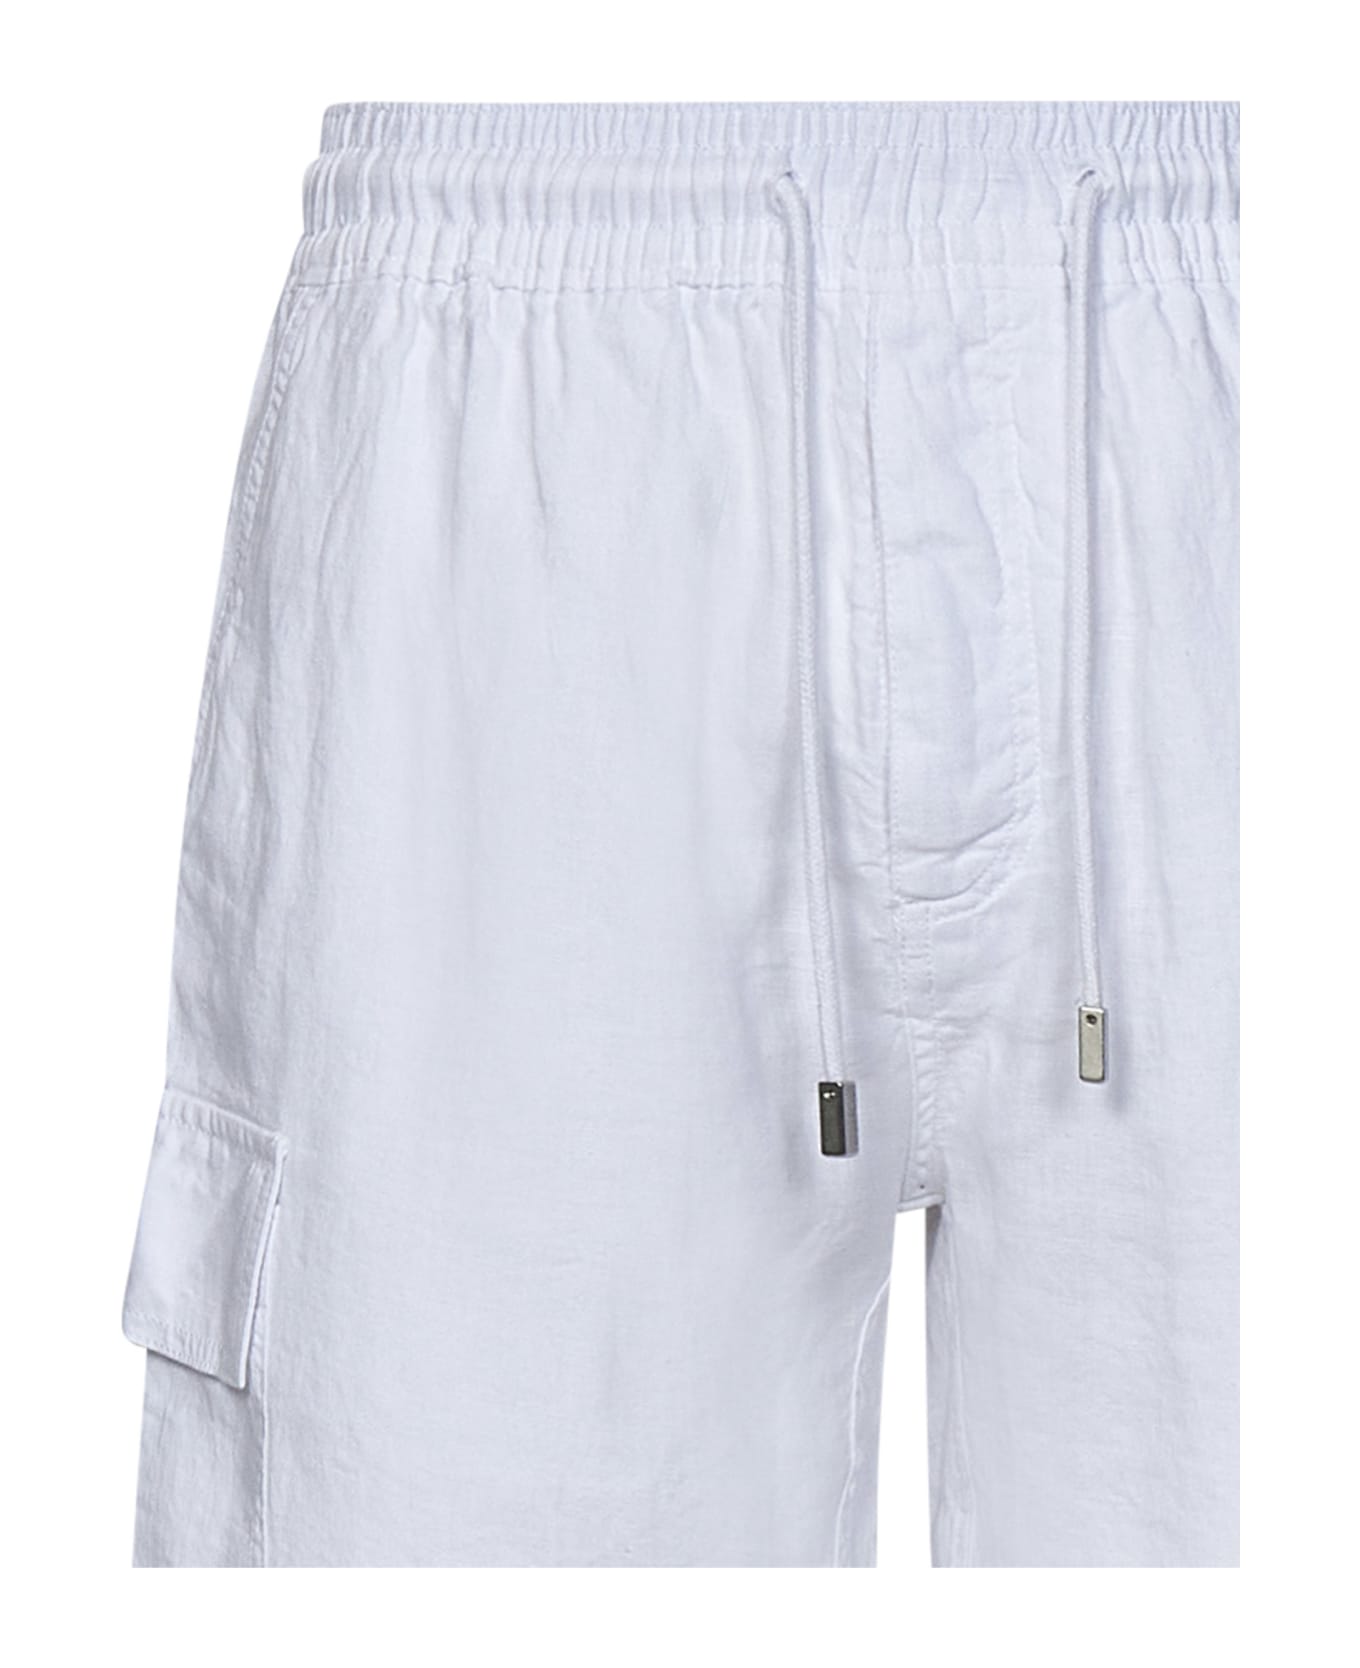 Vilebrequin Baie Shorts - White ショートパンツ